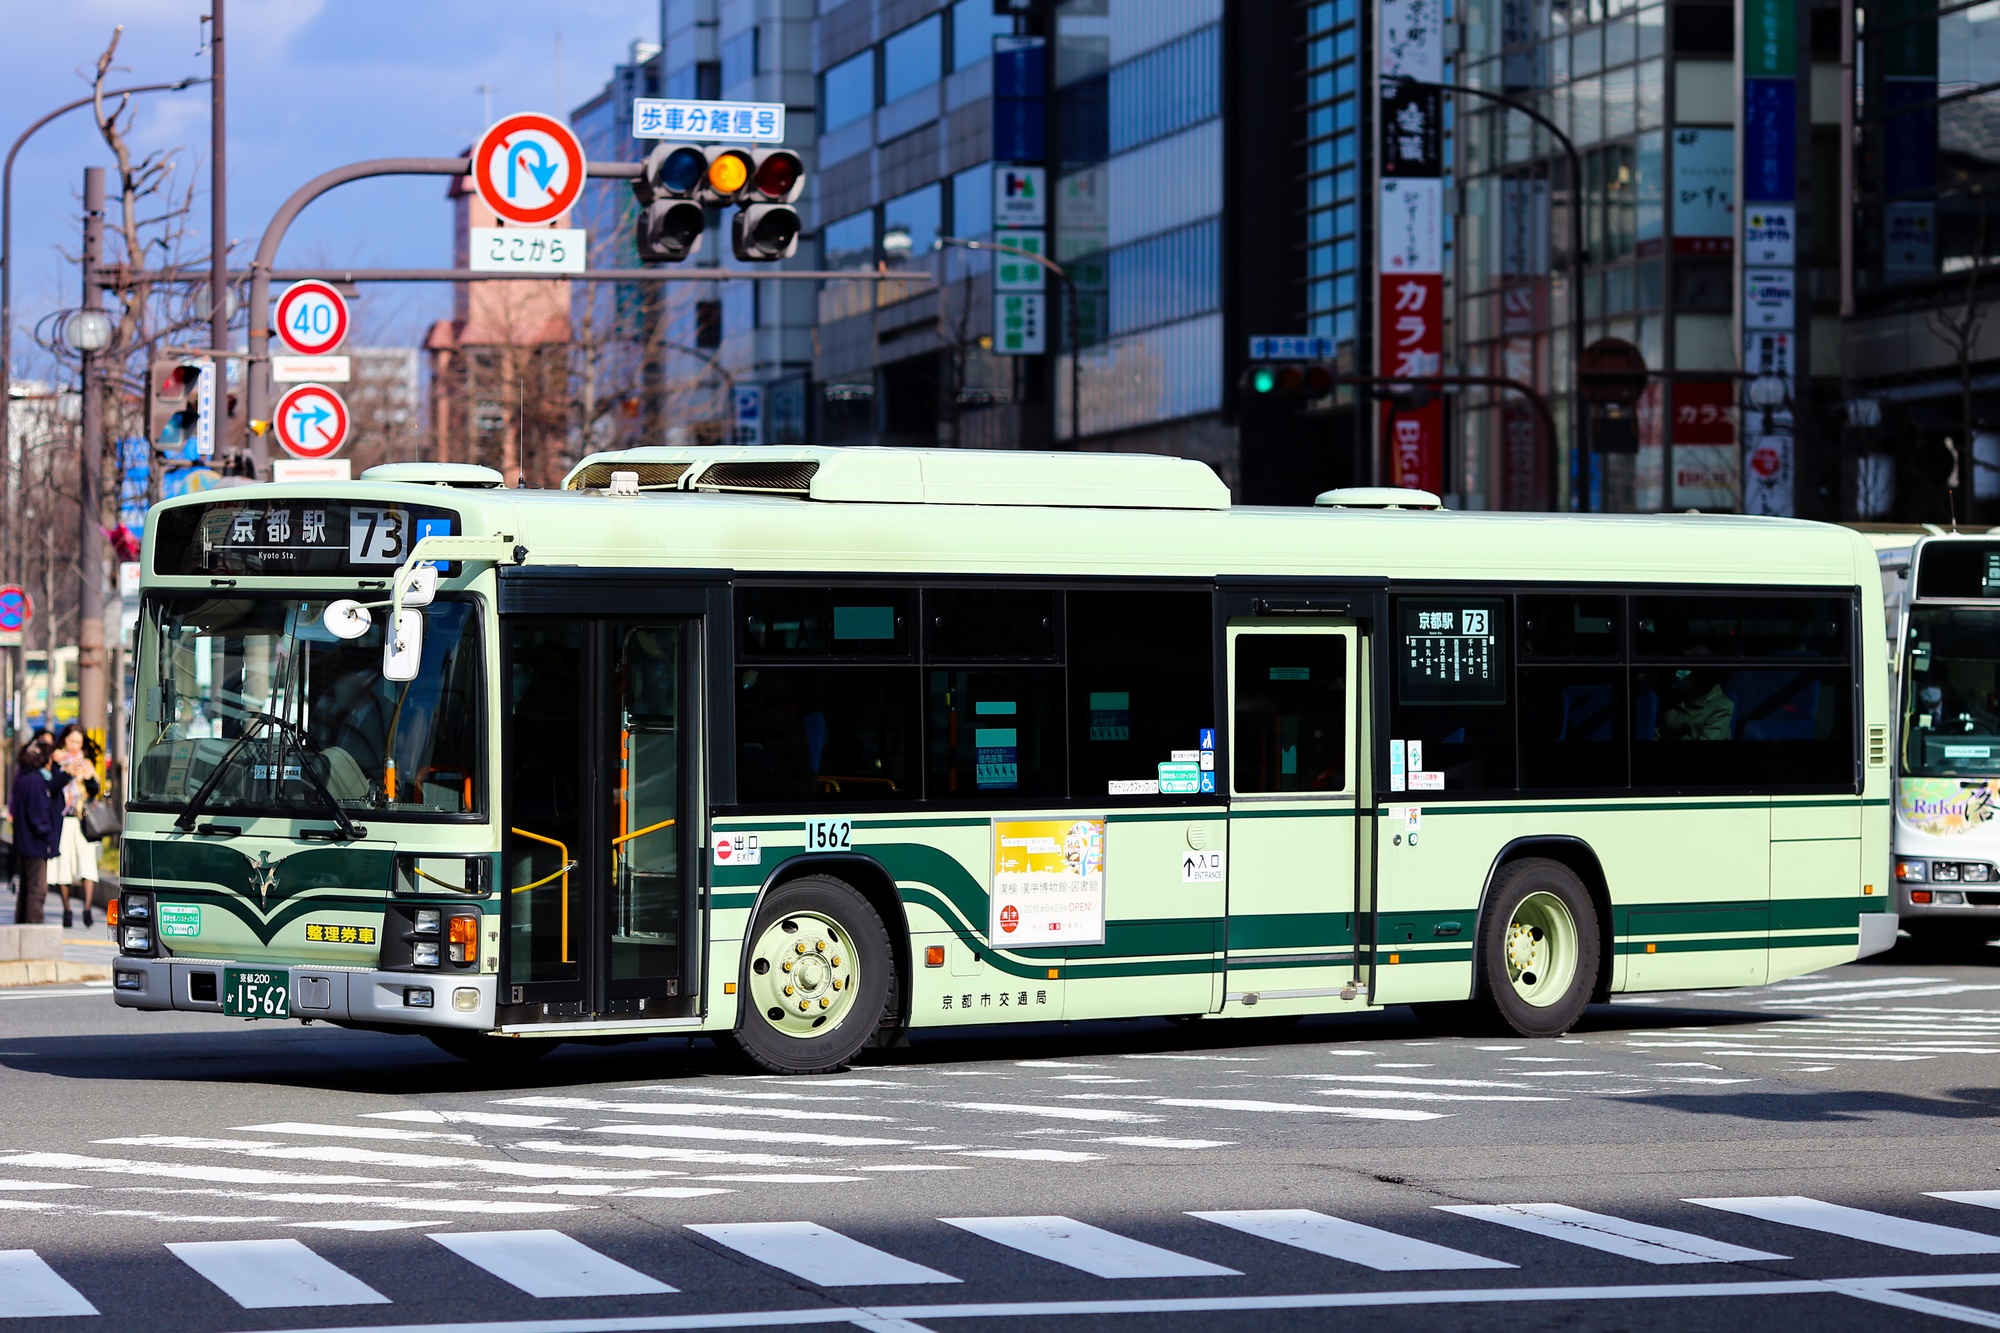 京都市バス 日野PJ-KV234N1 1562号車 73系統 京都駅前にて